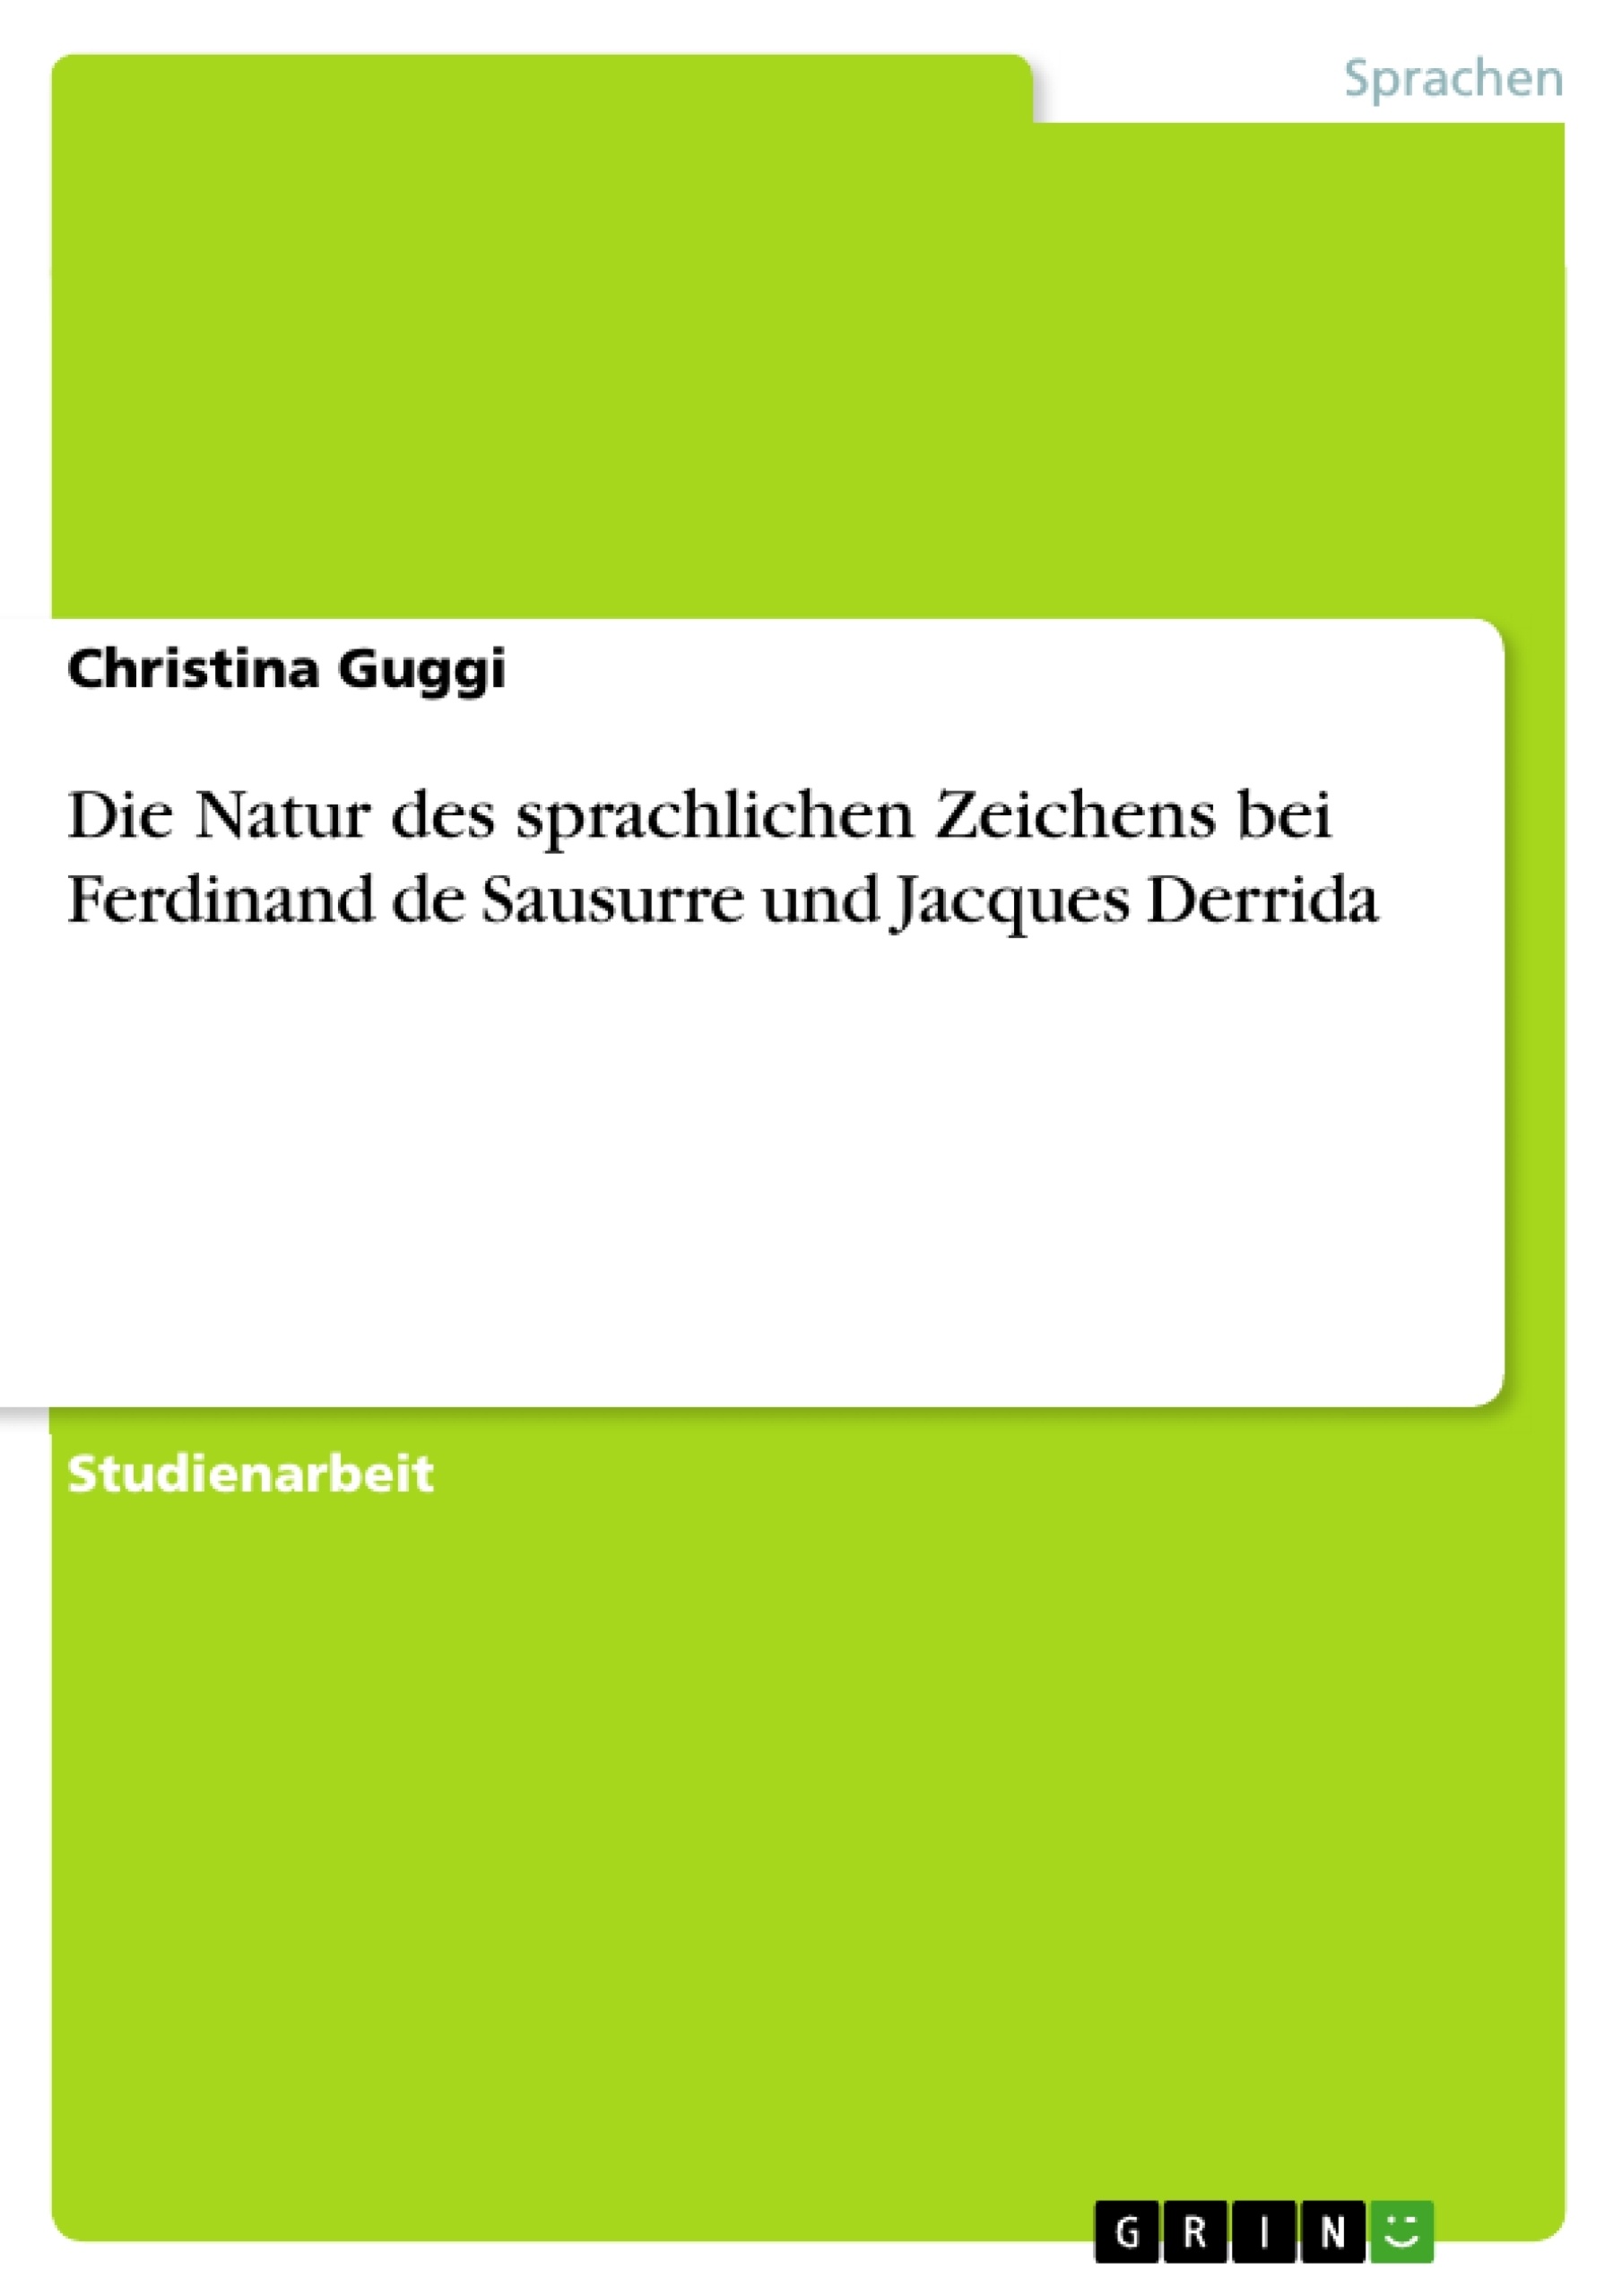 Title: Die Natur des sprachlichen Zeichens bei Ferdinand de Sausurre und Jacques Derrida